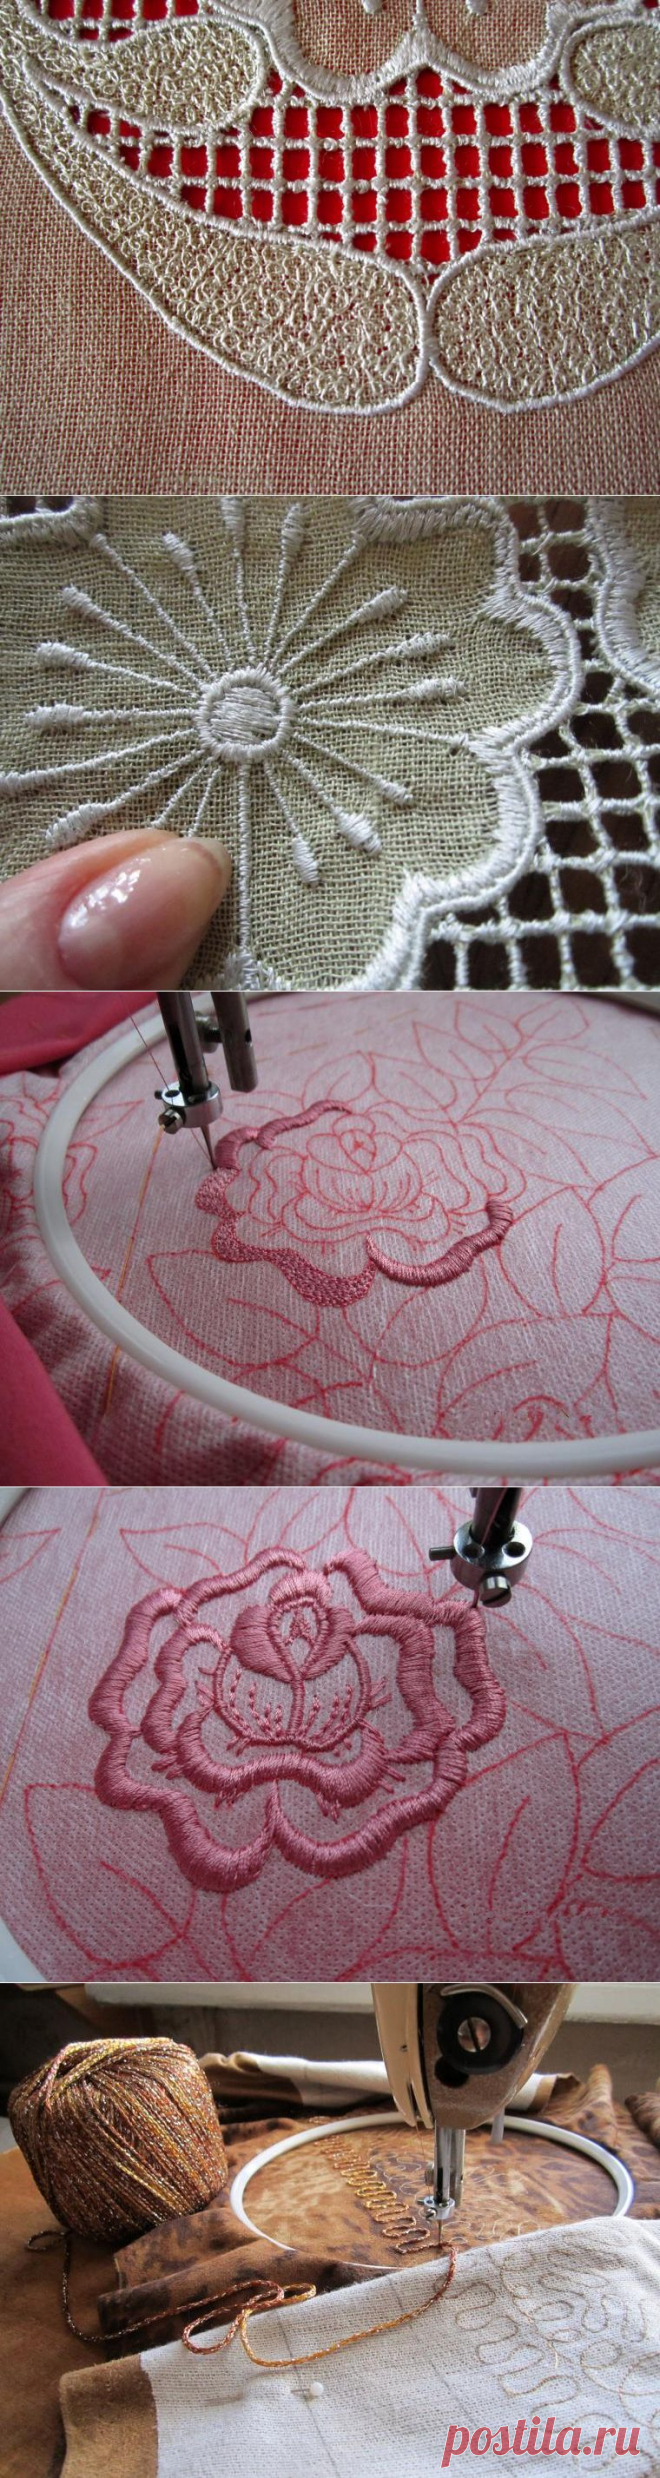 Осваиваем вышивку на простой швейной машинке - Ярмарка Мастеров - ручная работа, handmade